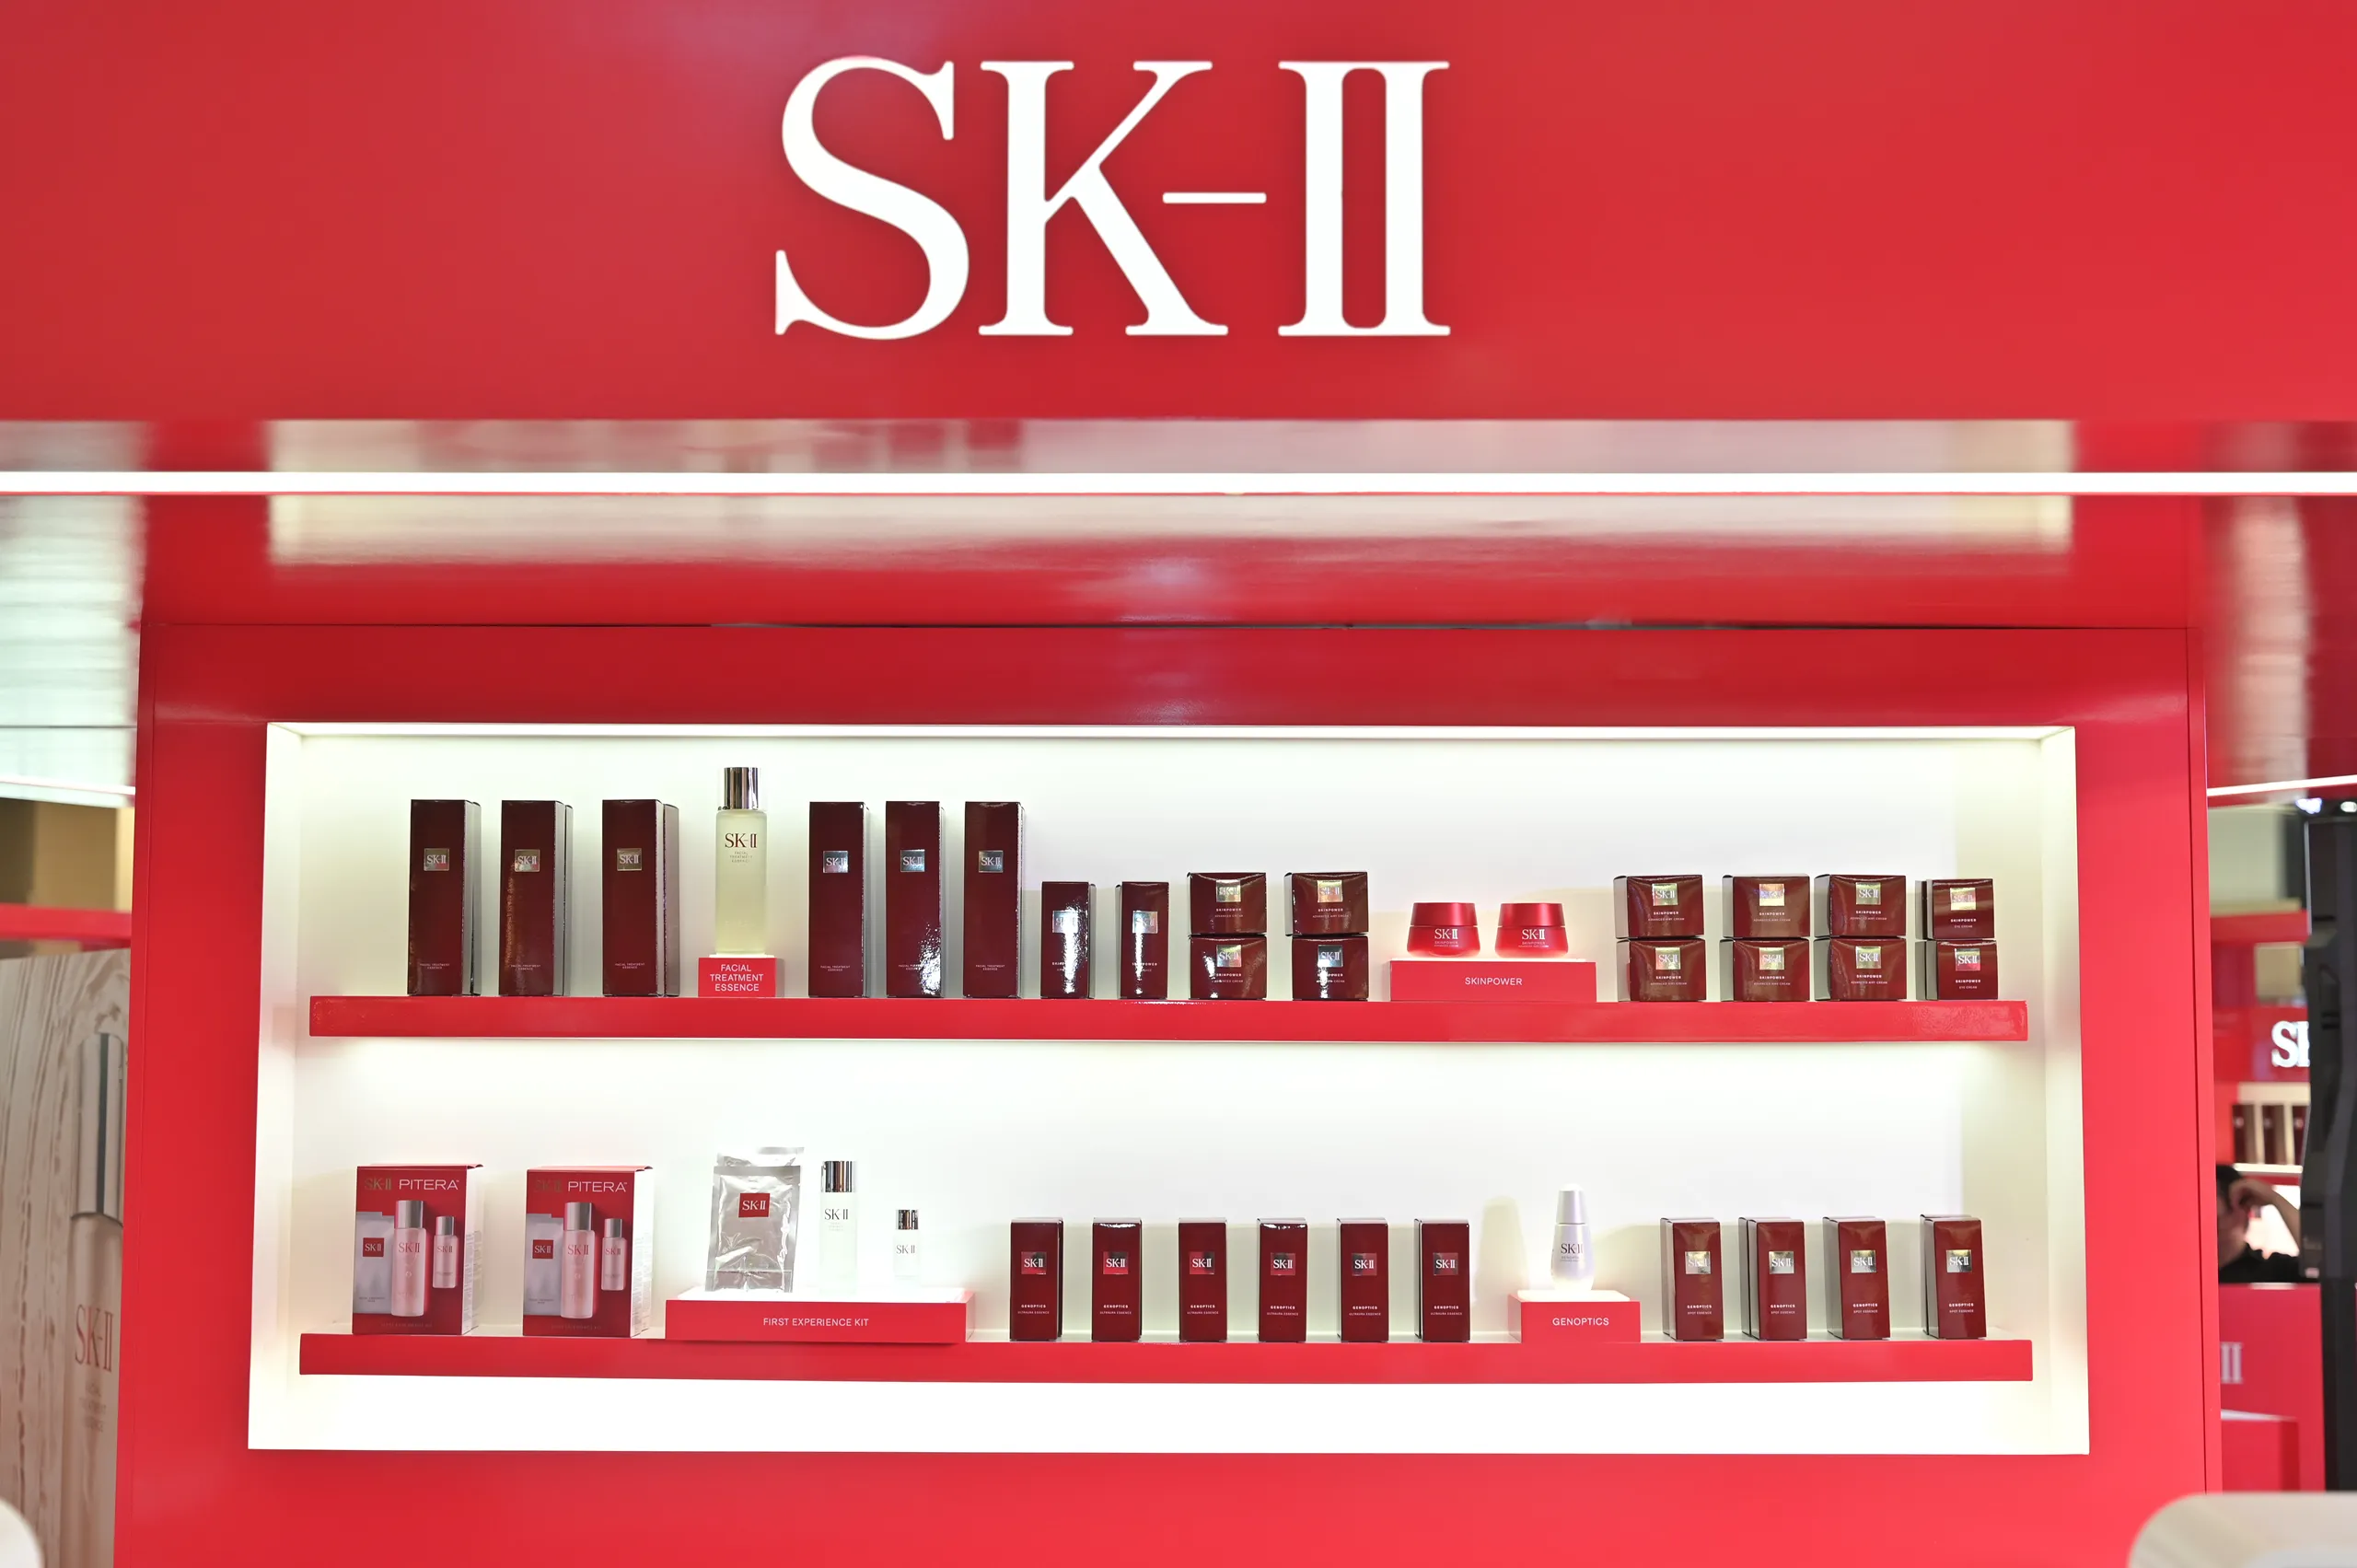 SK-II khai trương cửa hàng chính hãng tại Sài Gòn Centre